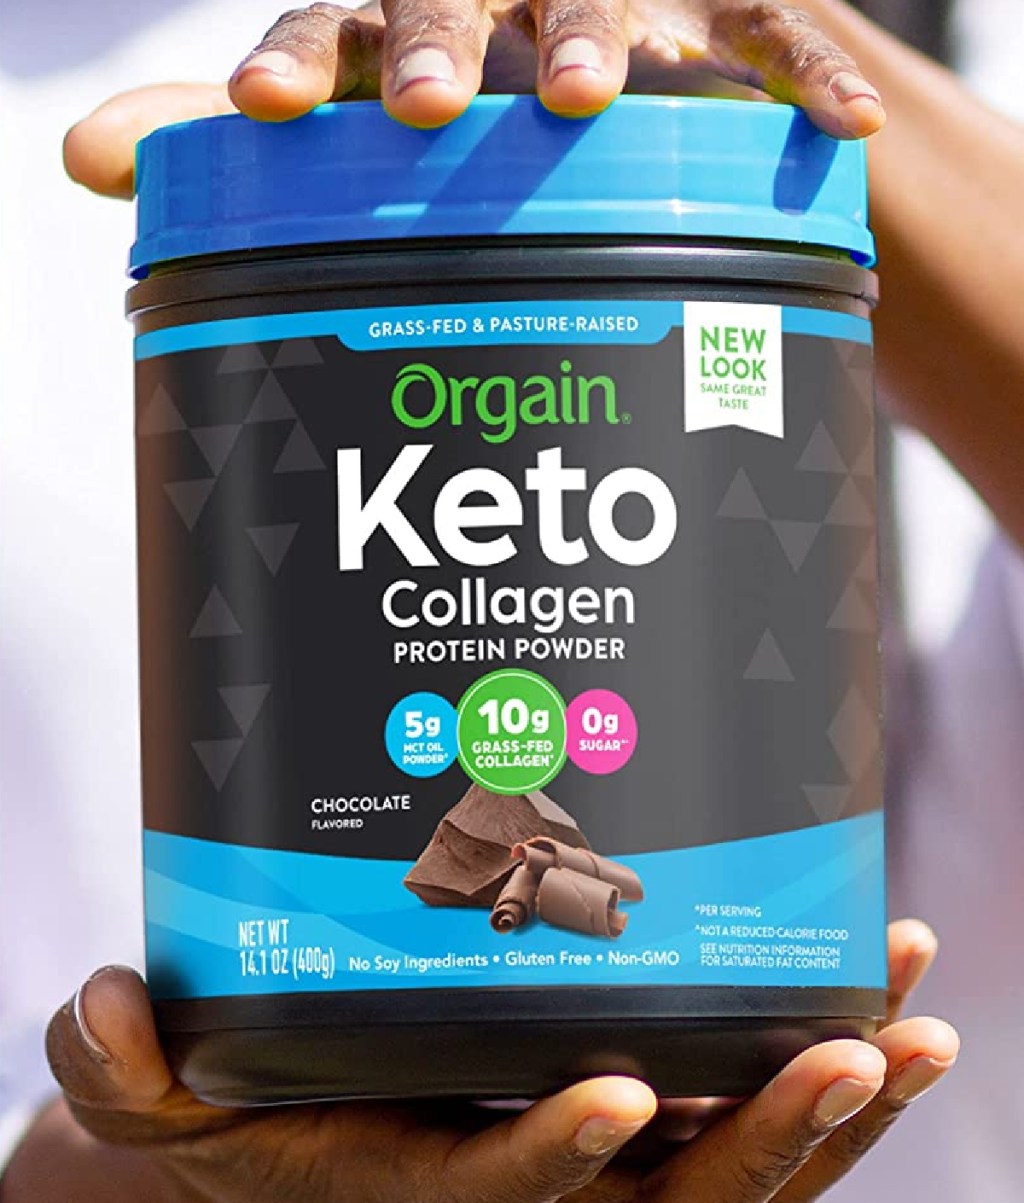 Orgain keto collagen protein powder